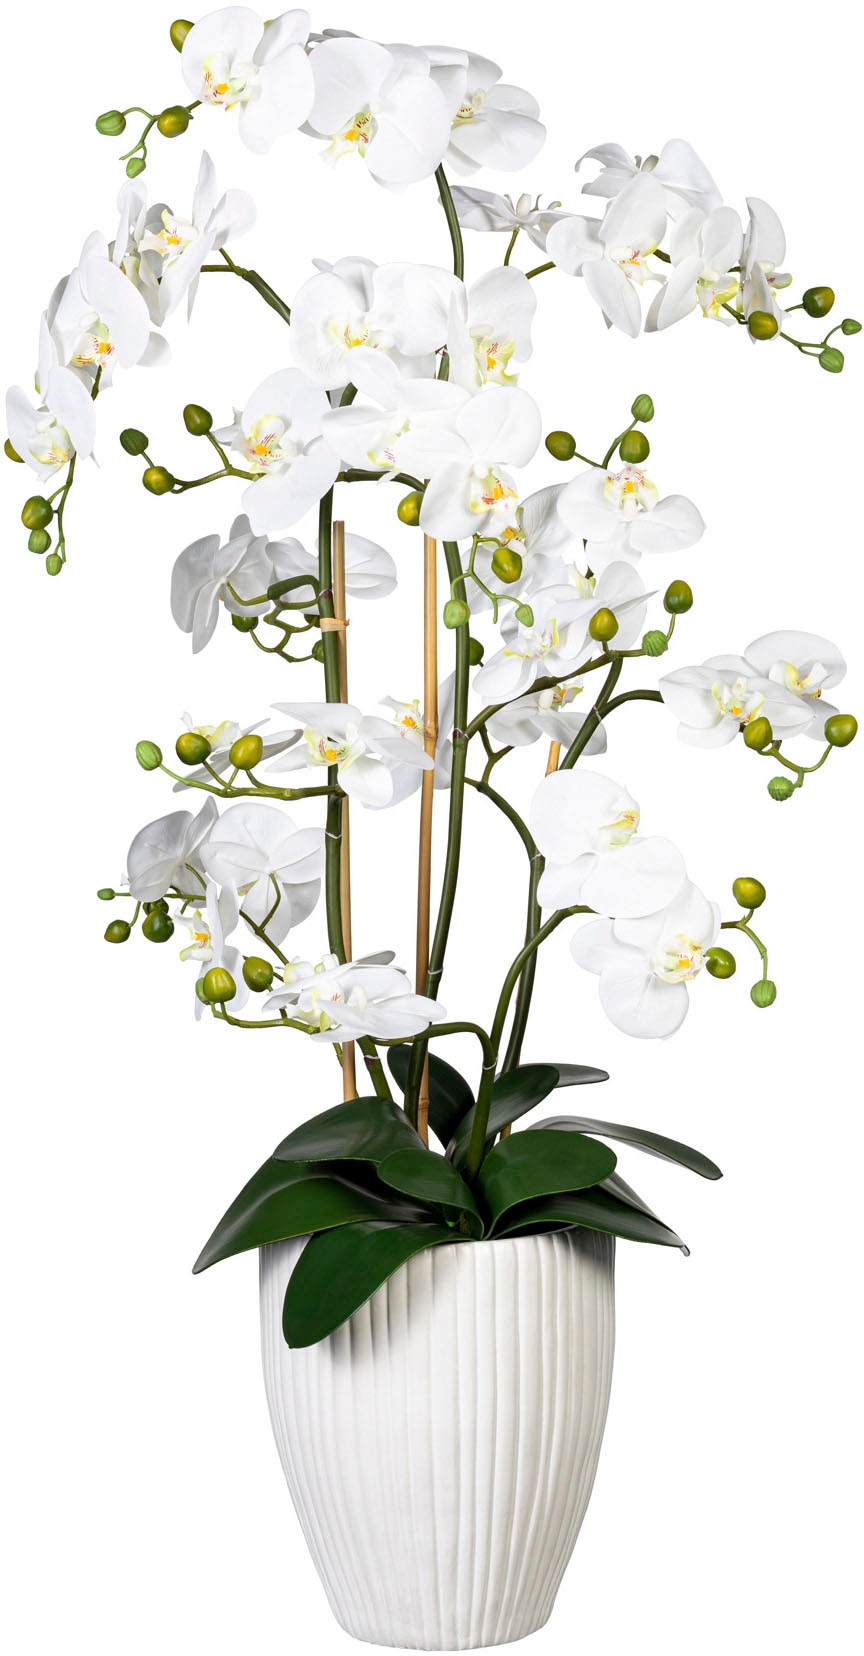 green bestellen »Deko-Orchidee Phalaenopsis Kunstorchidee XL auf Keramiktopf« im Rechnung Creativ